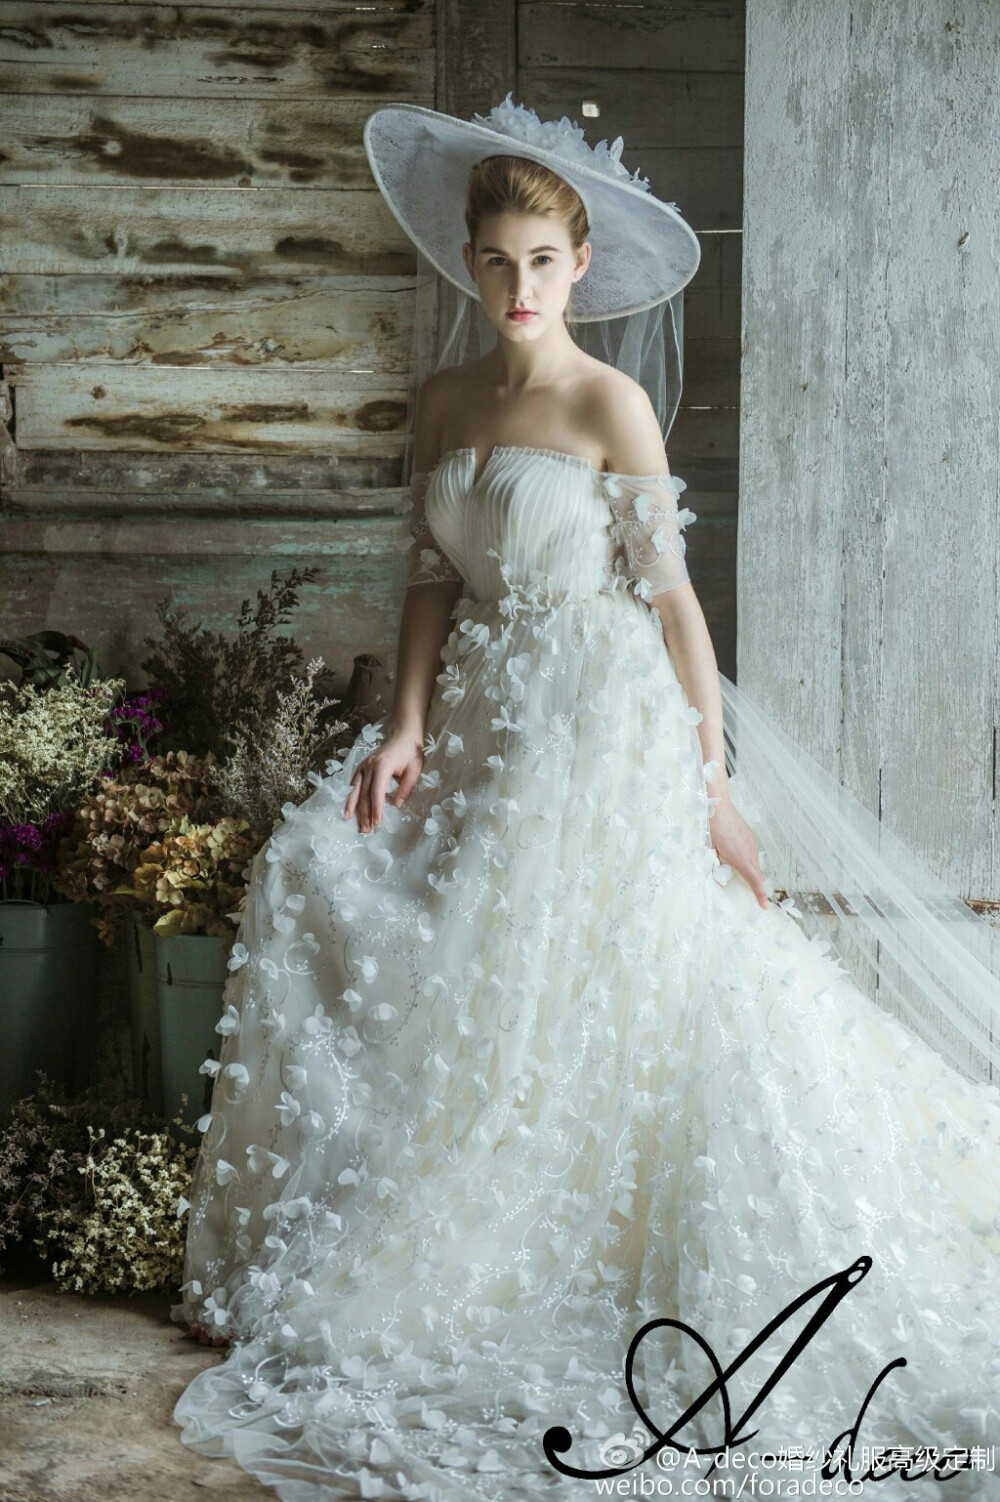 【A-deco】婚纱礼服 Flora系列—伊甸园。如同记忆中的浪漫，若隐若现，牵起梦幻般的纱，许下一生的愿。在爱情之都，定下誓言，相伴一生！